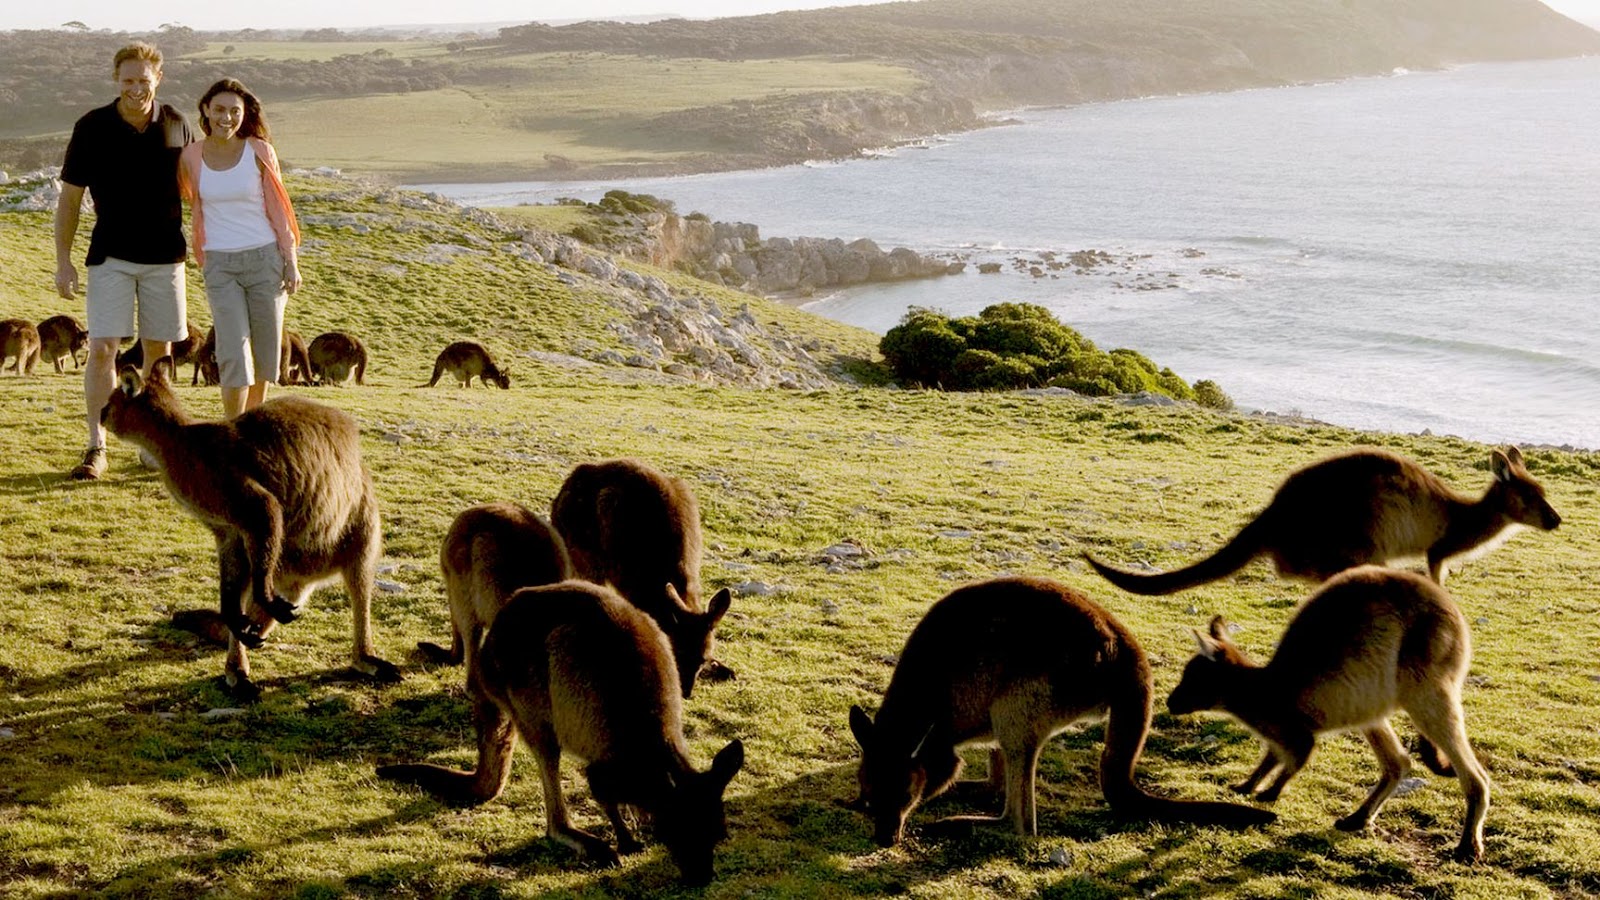 10 Objek Wisata Menarik Di Australia Yang Wajib Dikunjungi | Indephedia.com